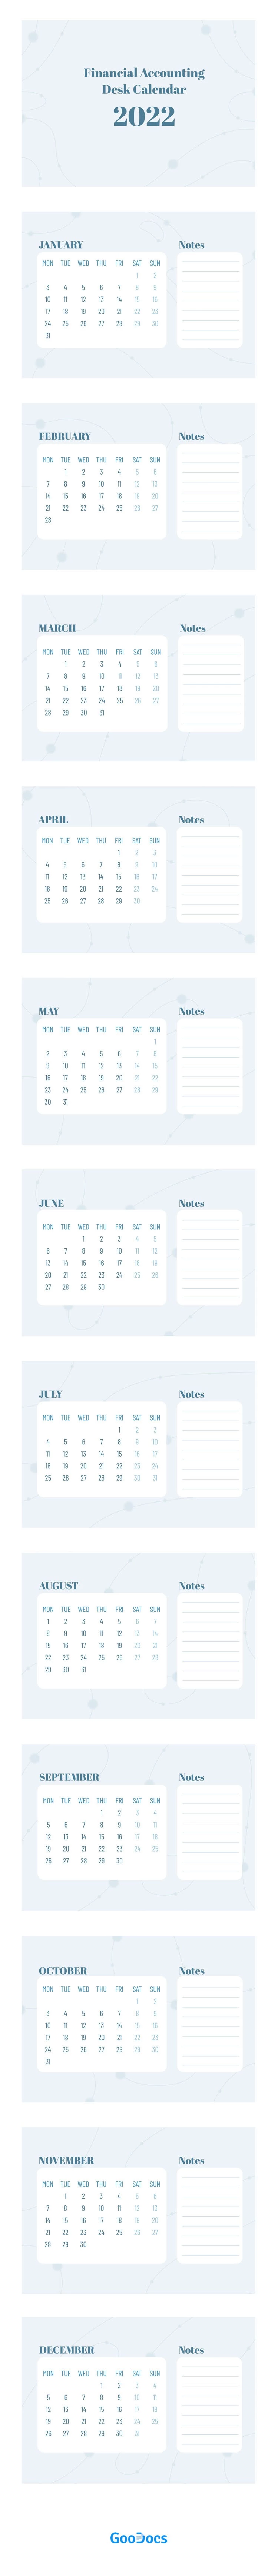 Calendario de escritorio de Contabilidad Financiera - free Google Docs Template - 10061940